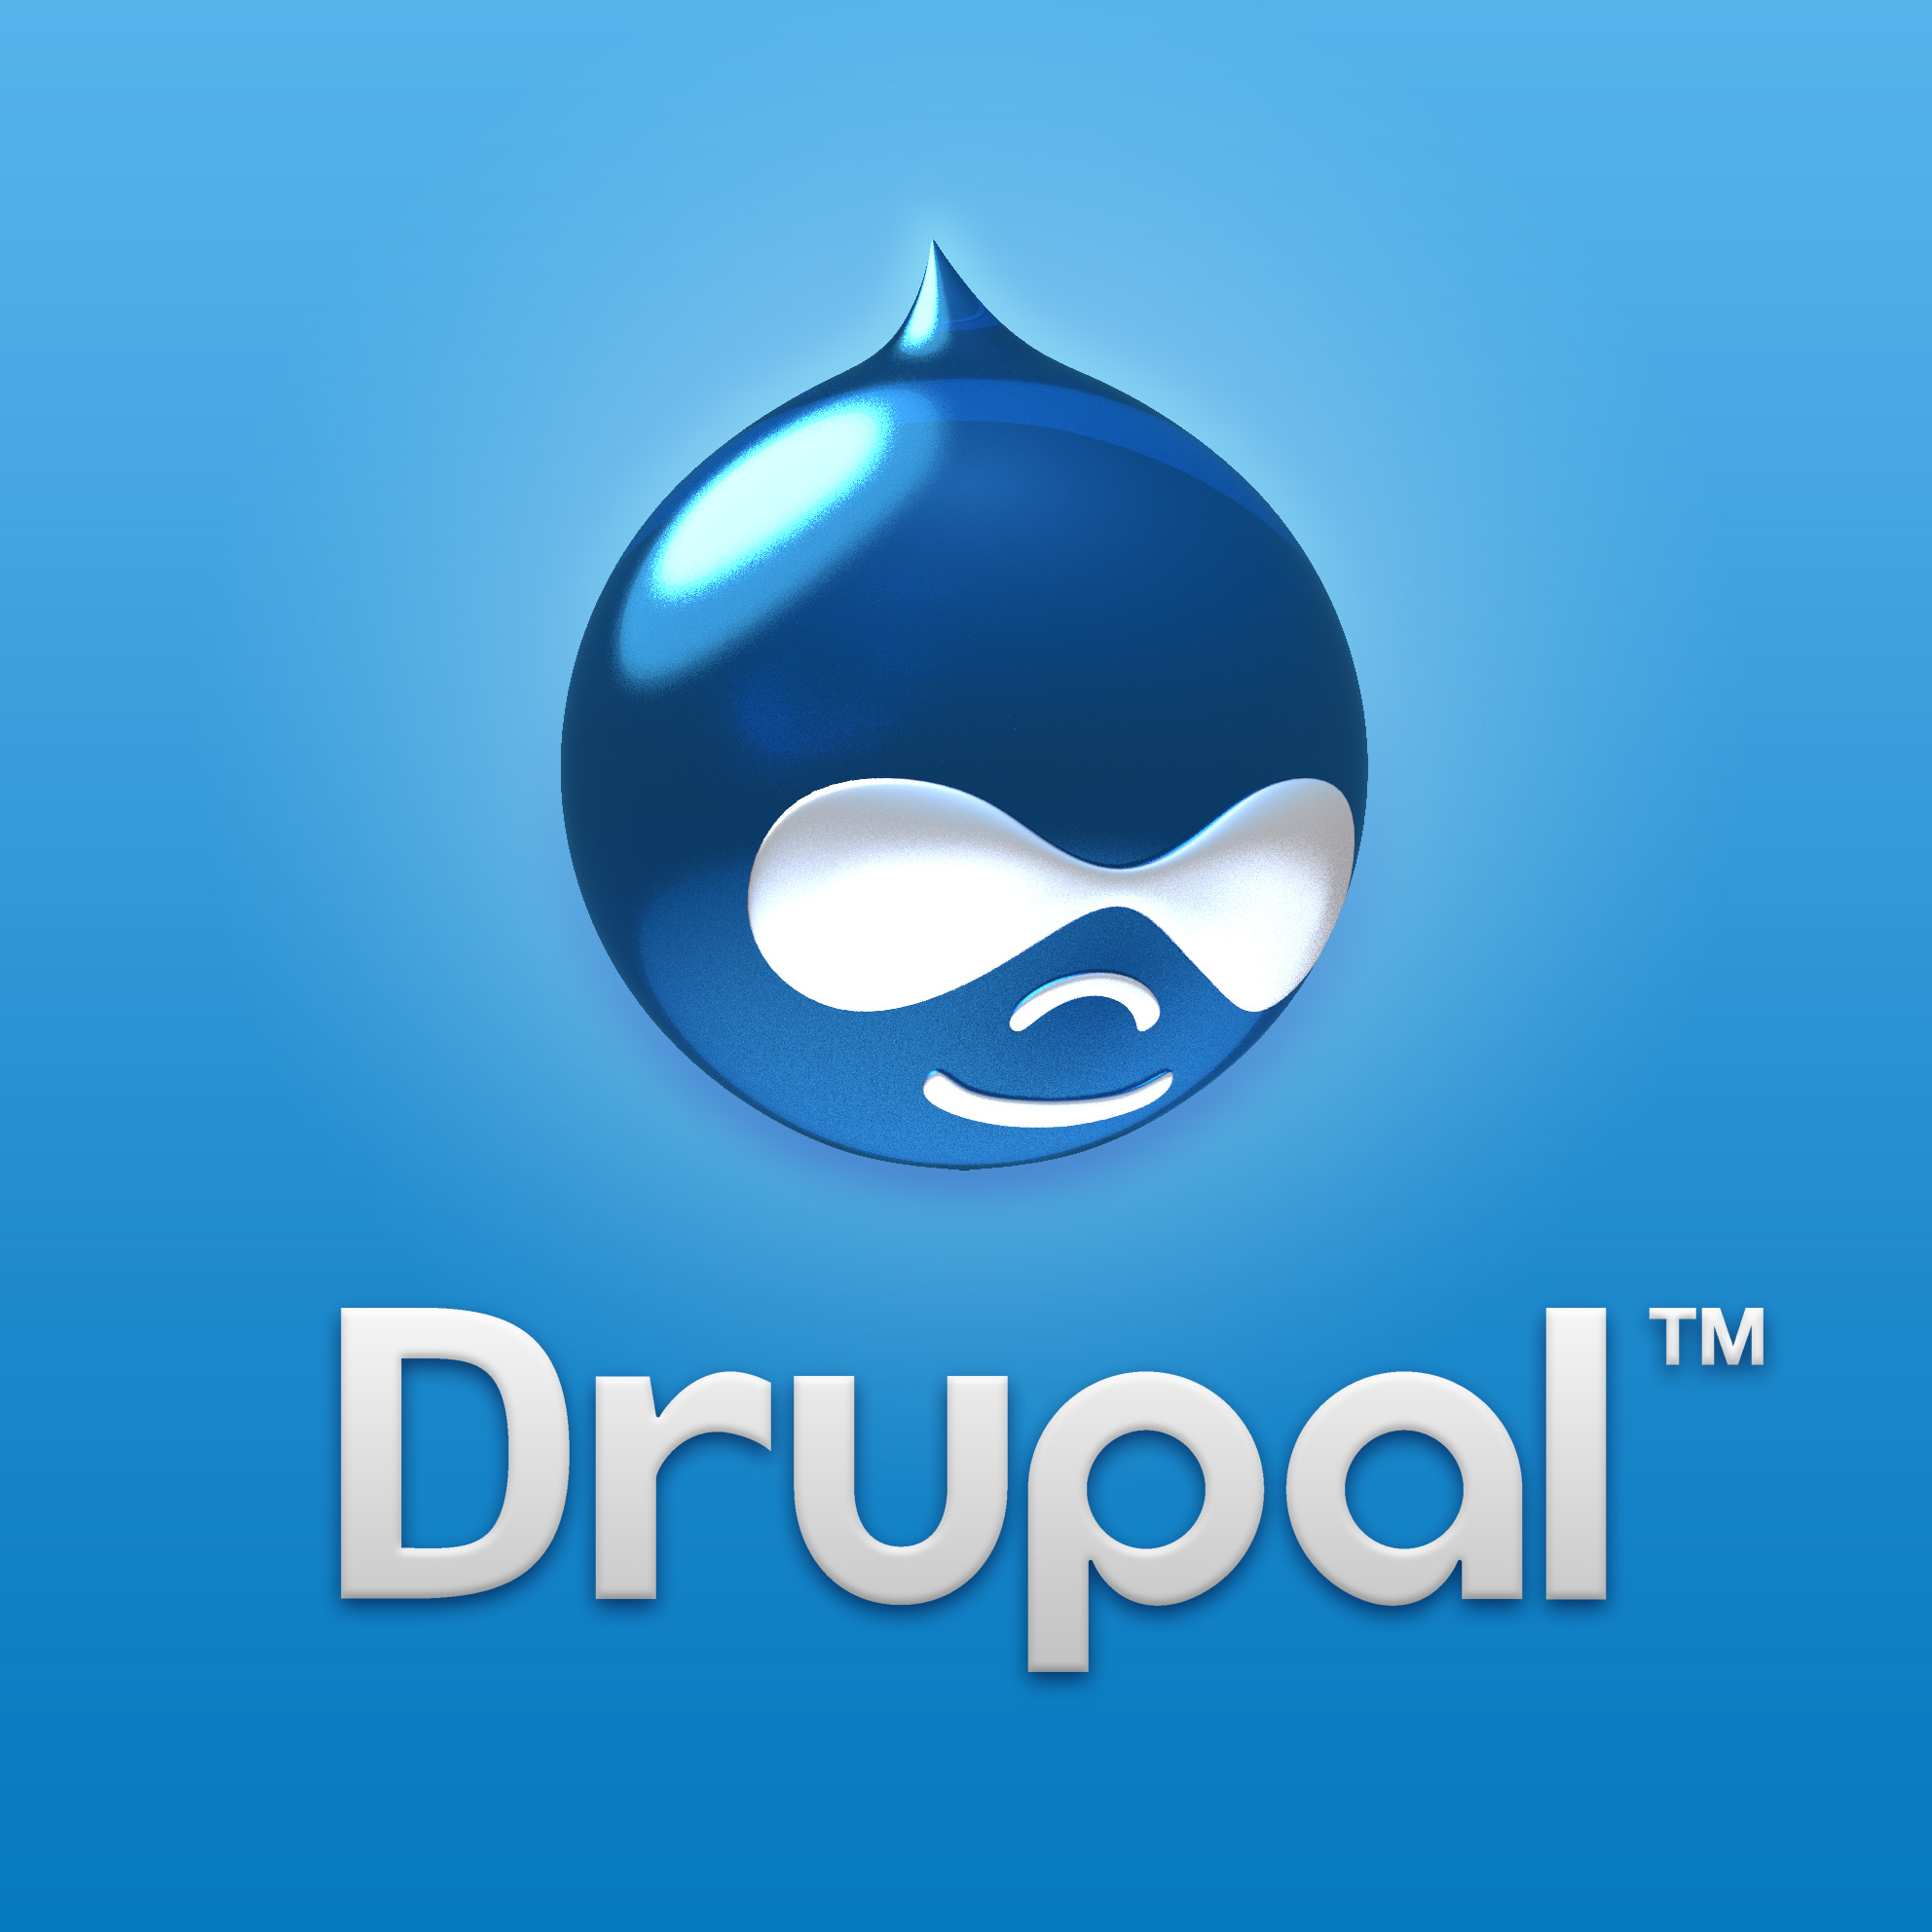 Drupal là gì? Có gì mới trong phiên bản Drupal 8 - Ảnh 1.